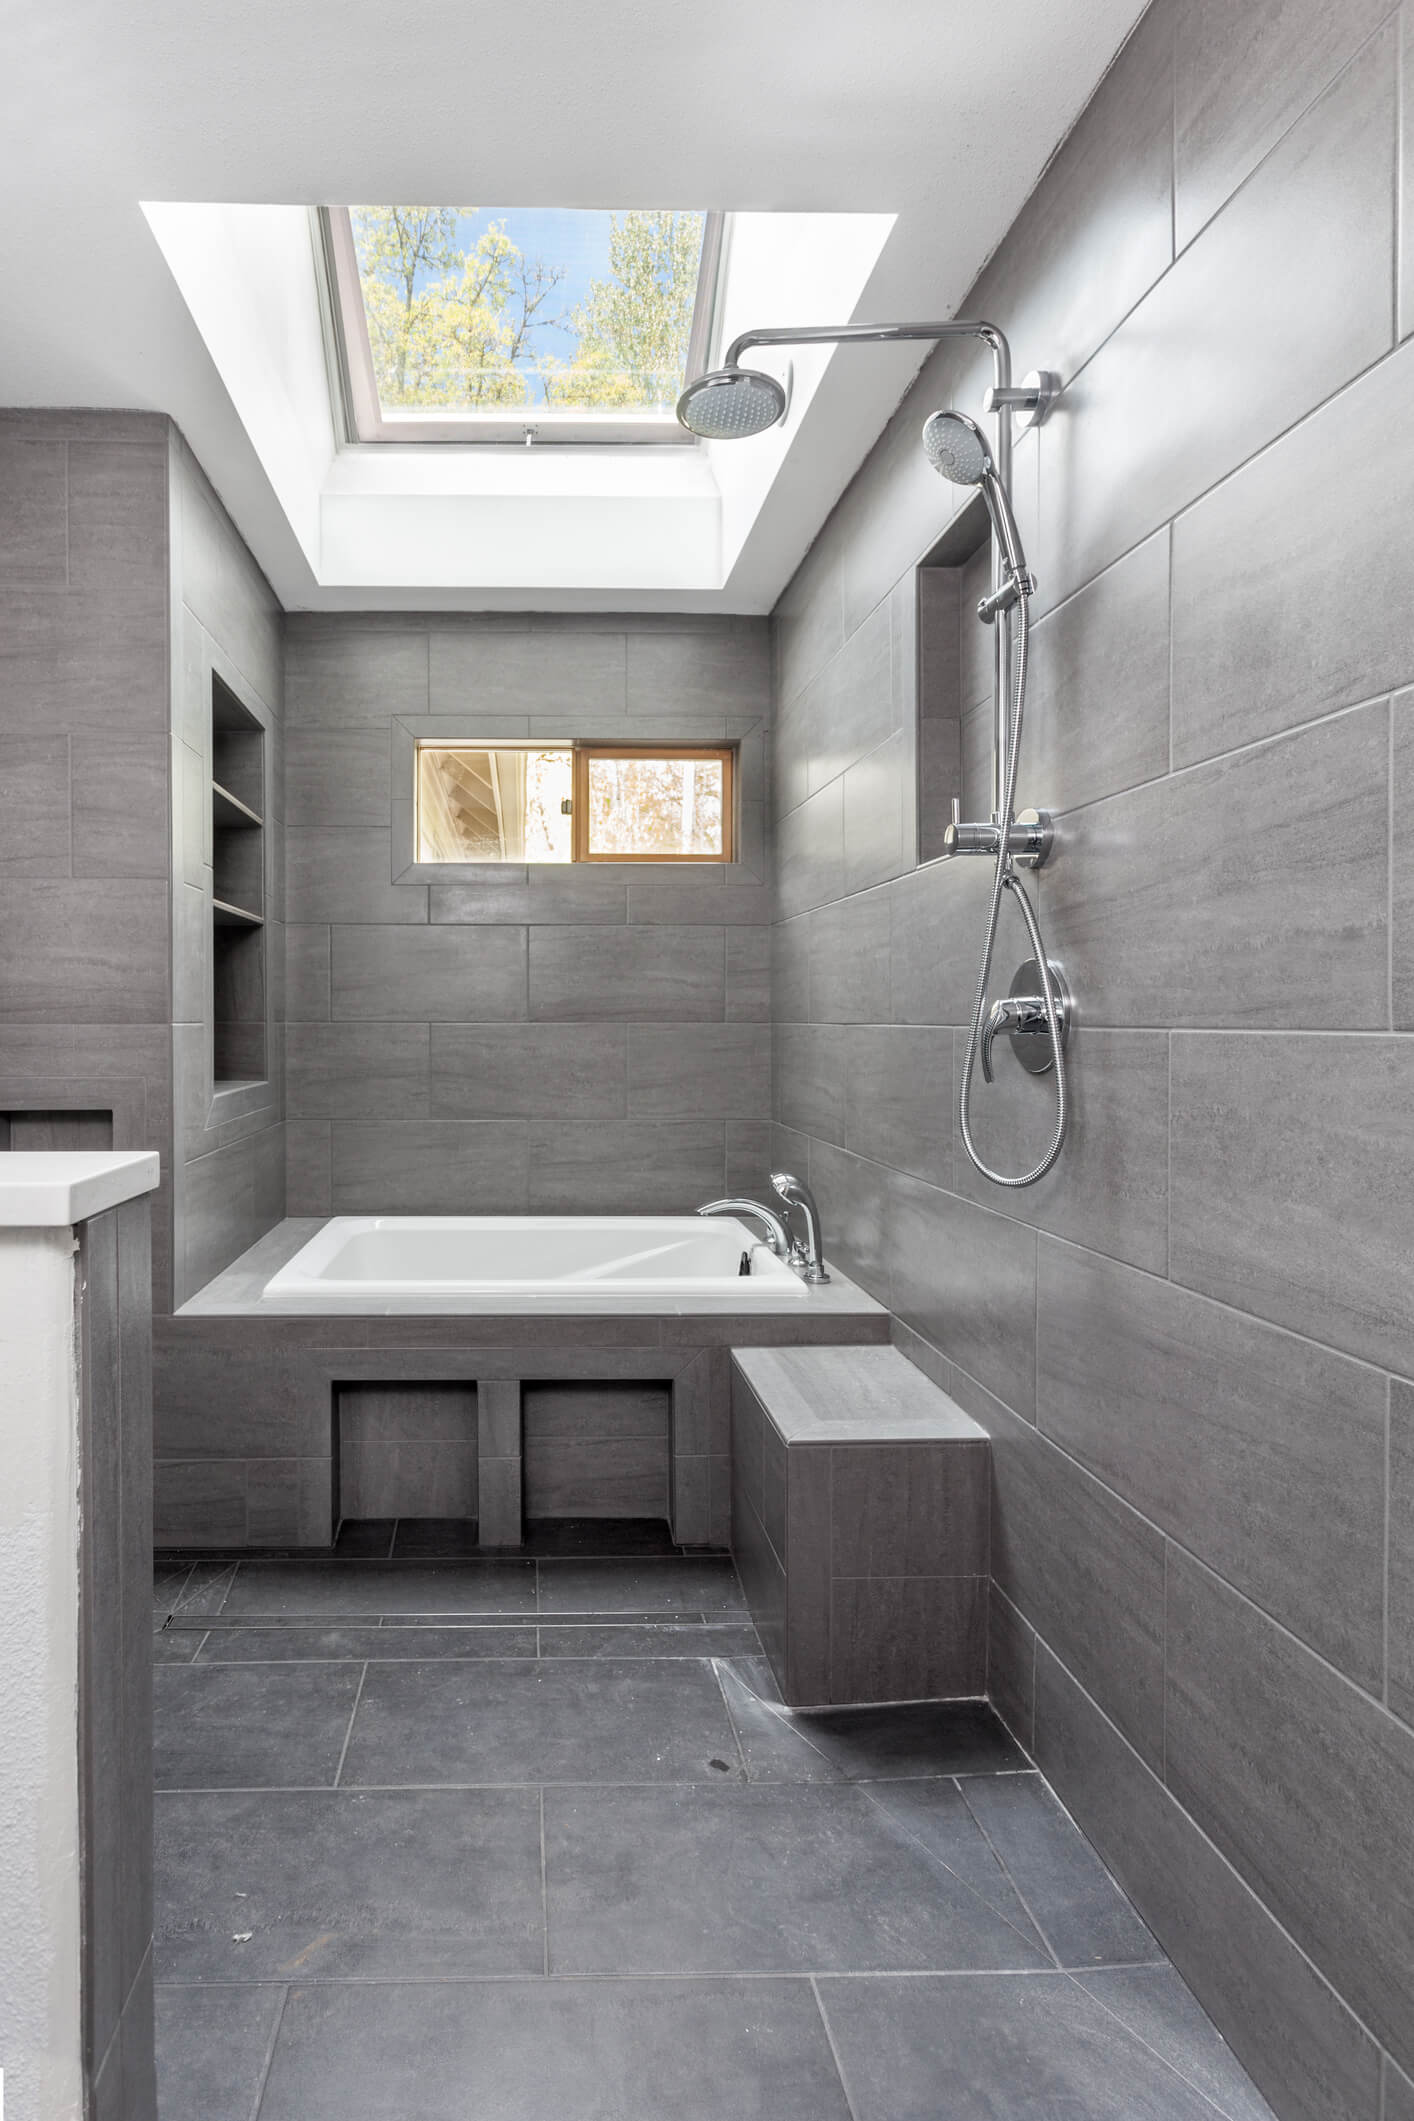 Sleek, modern wetroom installation with bath, shower and sink